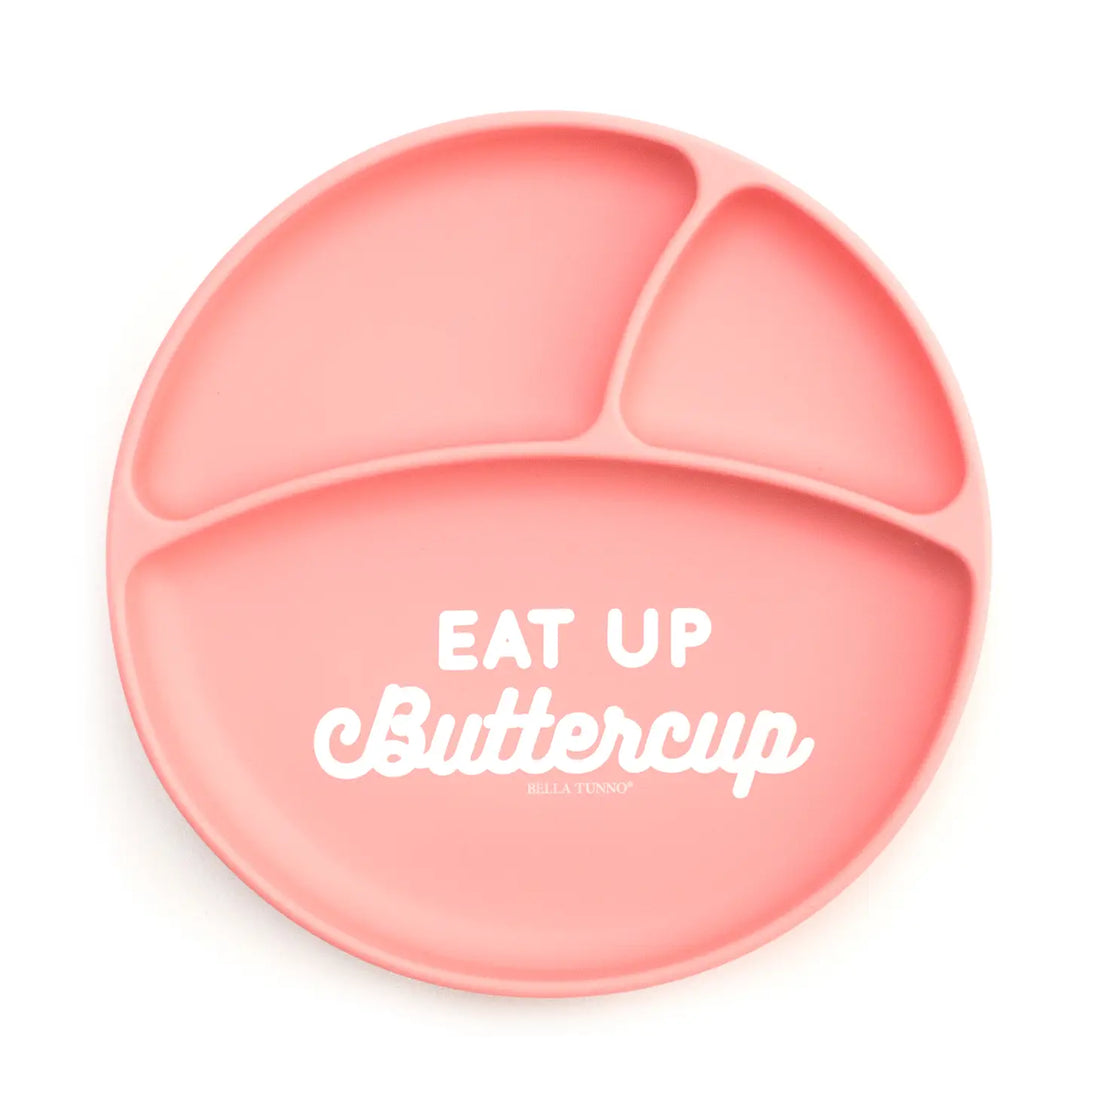 Eat Up Buttercup Wonder Plate